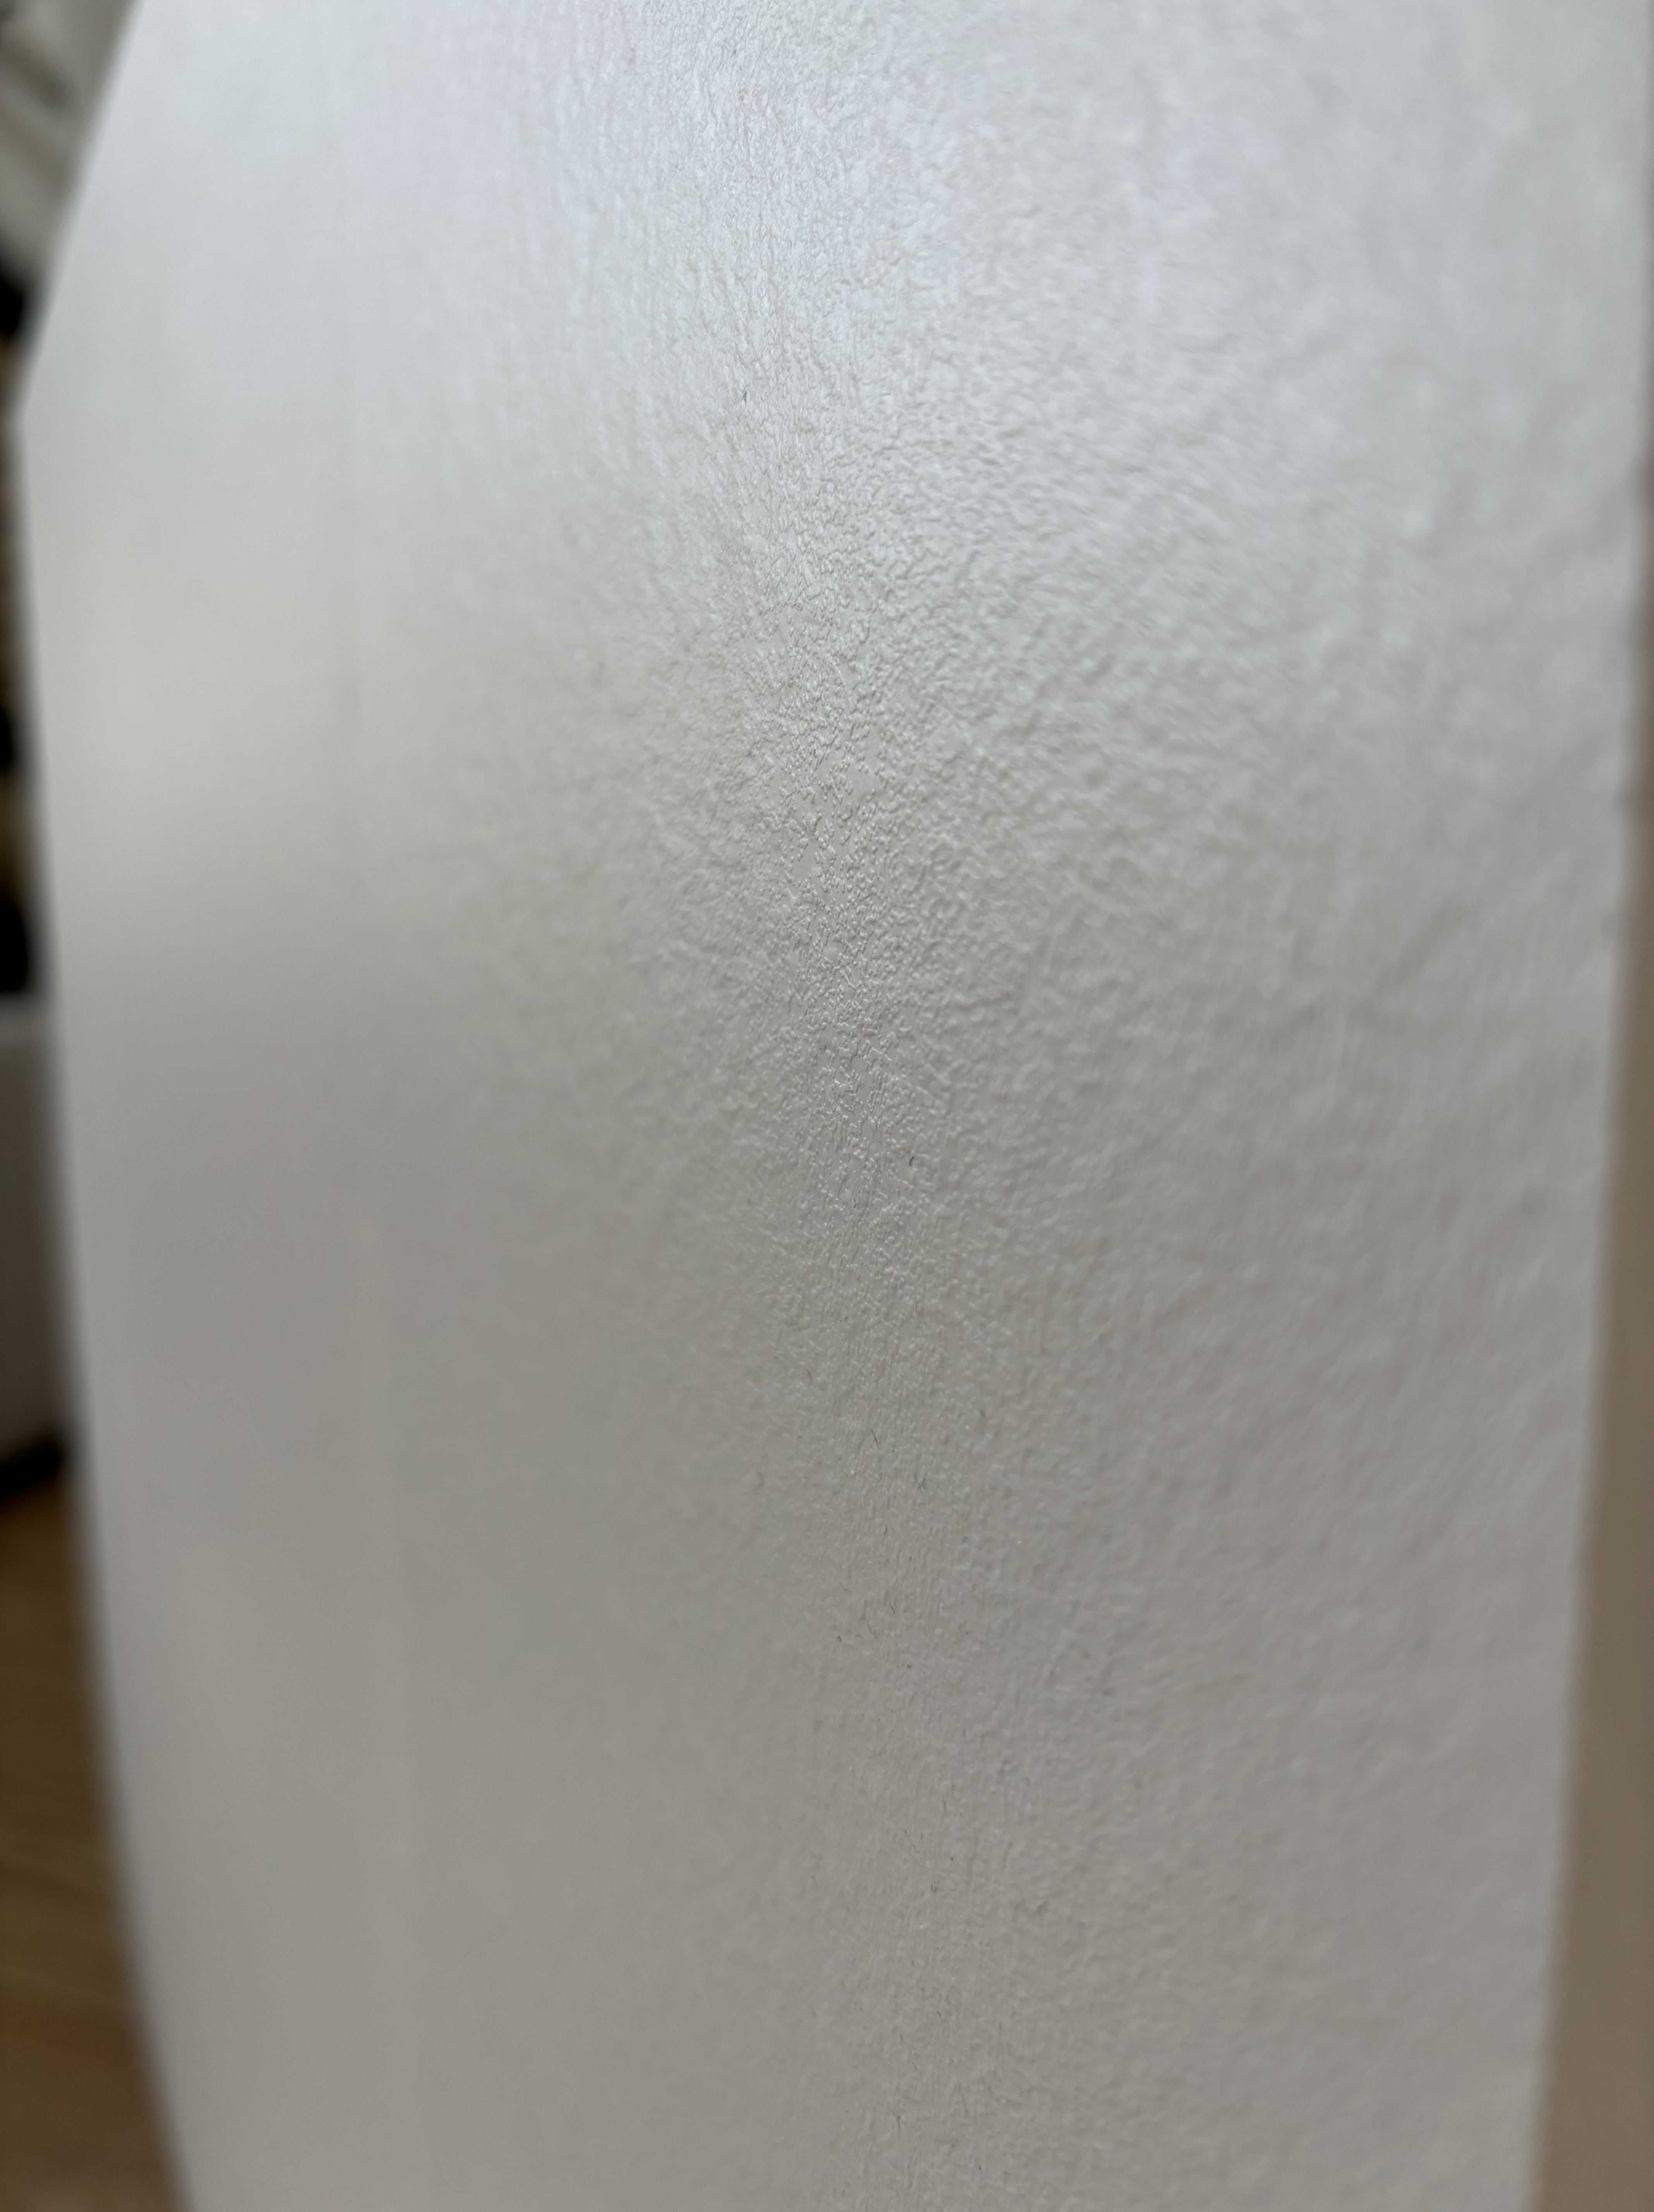 Formatki blatu z laminatu kompaktowego12mm.EGGER W1101 ST76 biały alpe